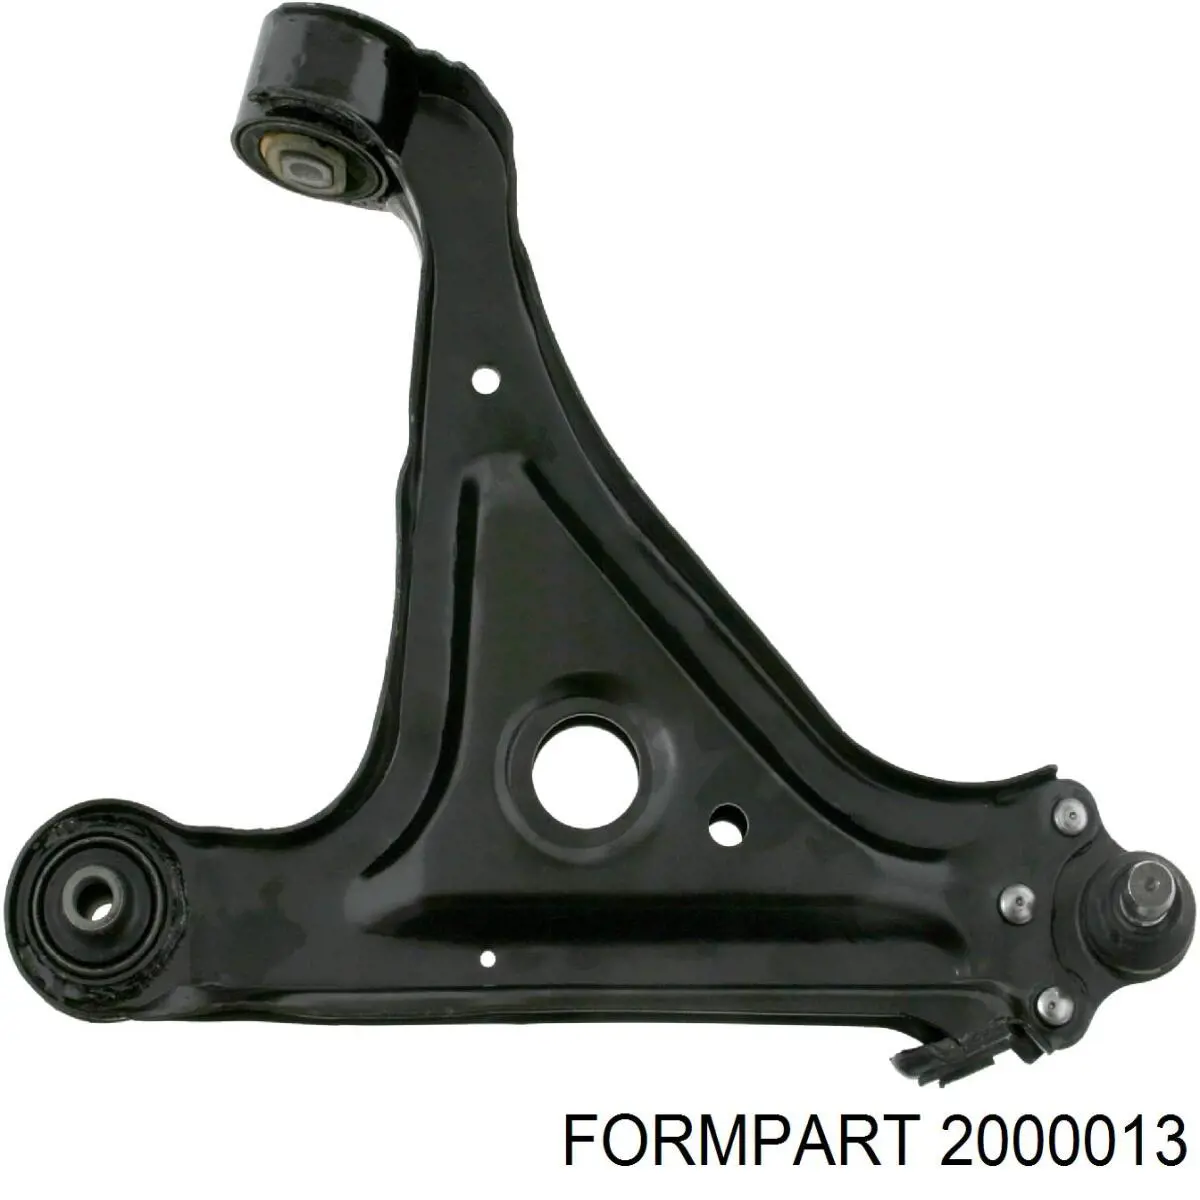 2000013 Formpart/Otoform сайлентблок переднего нижнего рычага